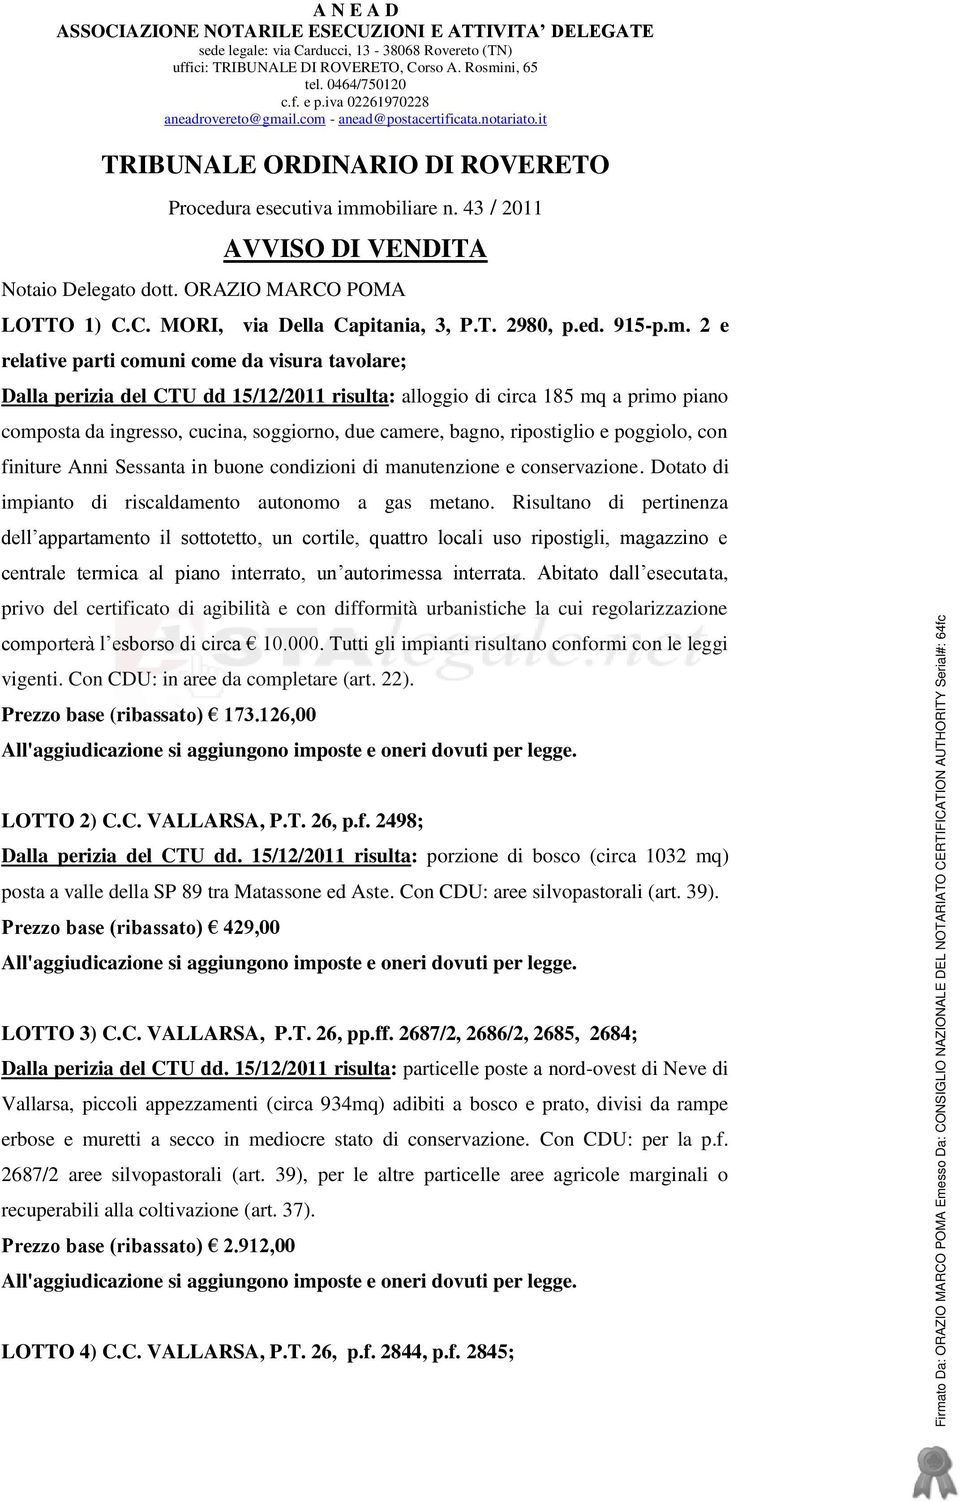 ORAZIO MARCO POMA LOTTO 1) C.C. MORI, via Della Capitania, 3, P.T. 2980, p.ed. 915-p.m.